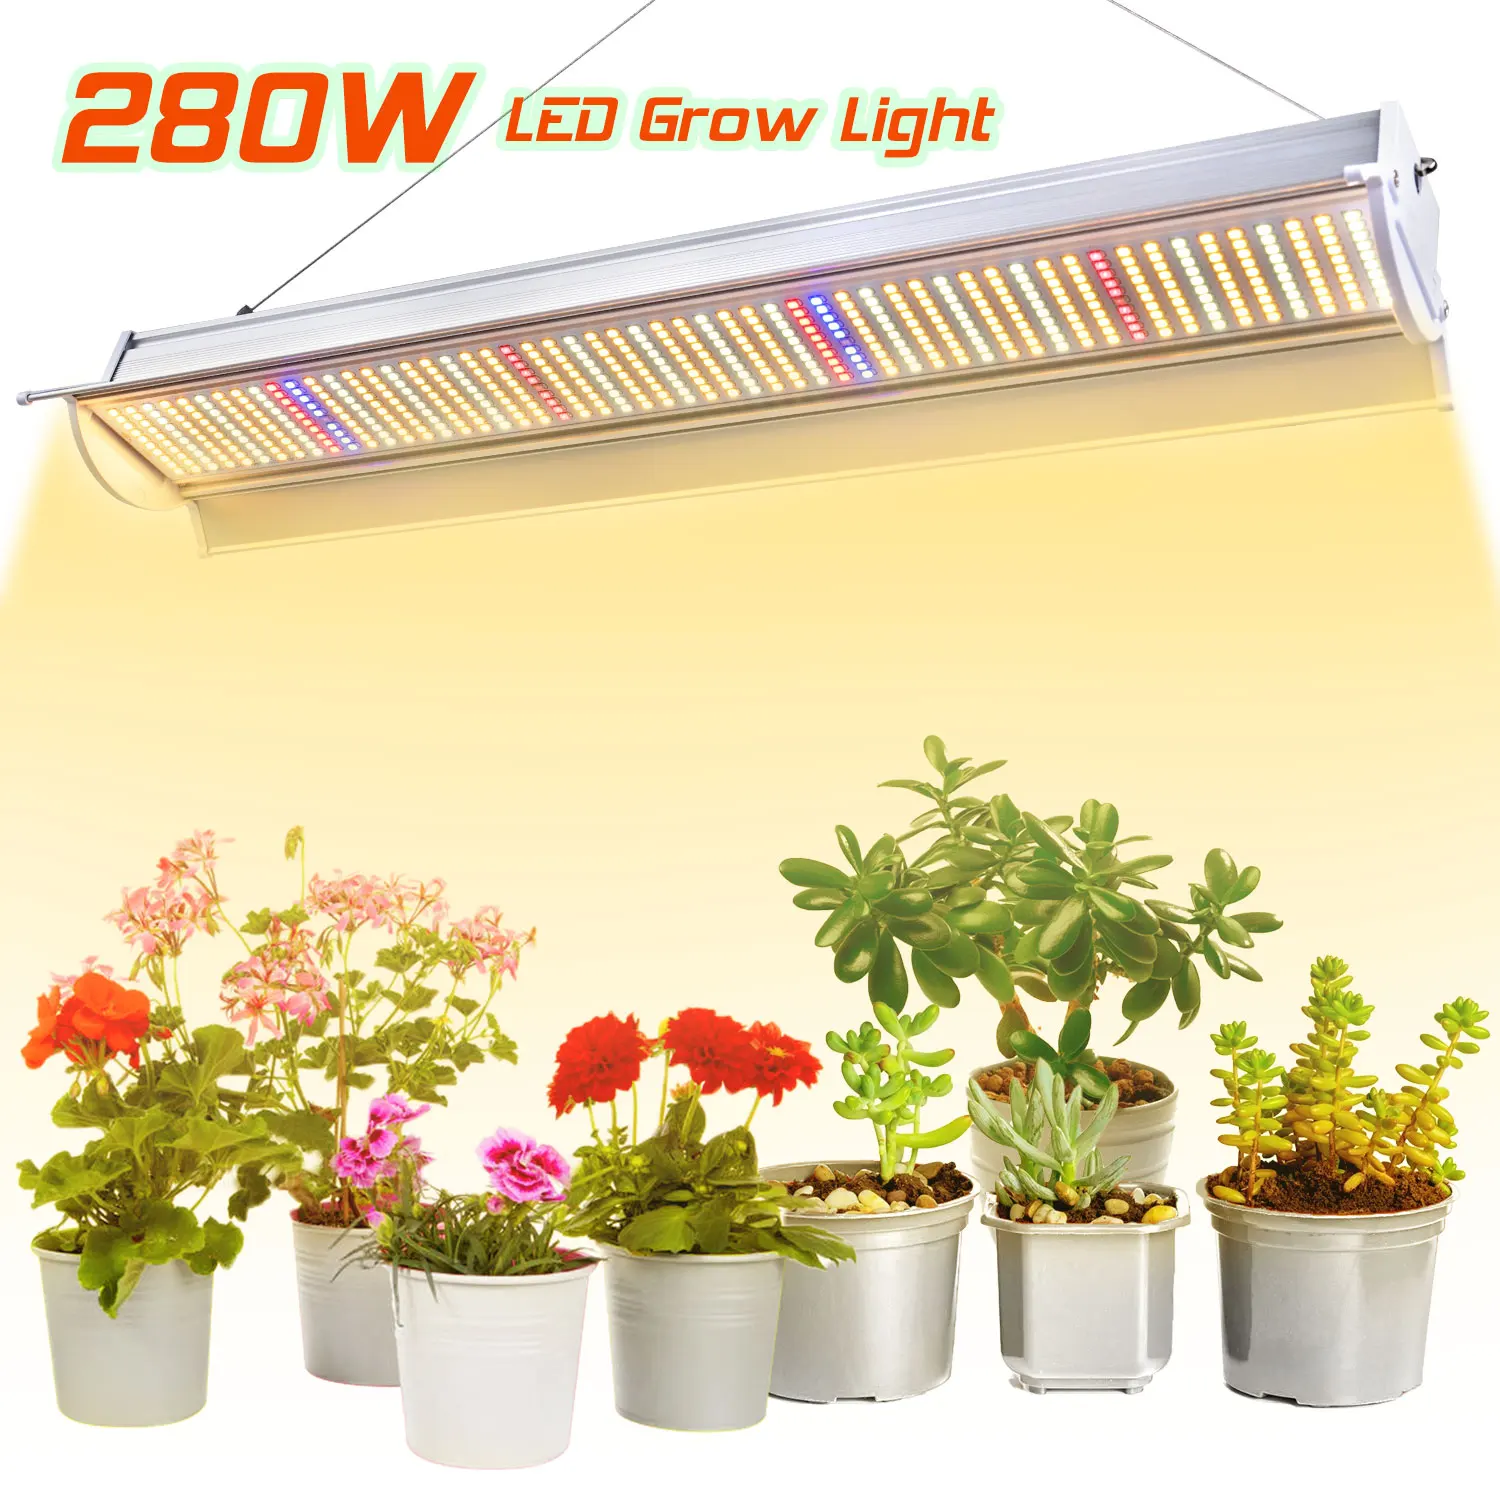 280W LED Grow Light Lamp Vollspektrum Pflanzenlampe Pflanzenlicht Wachsen Licht 